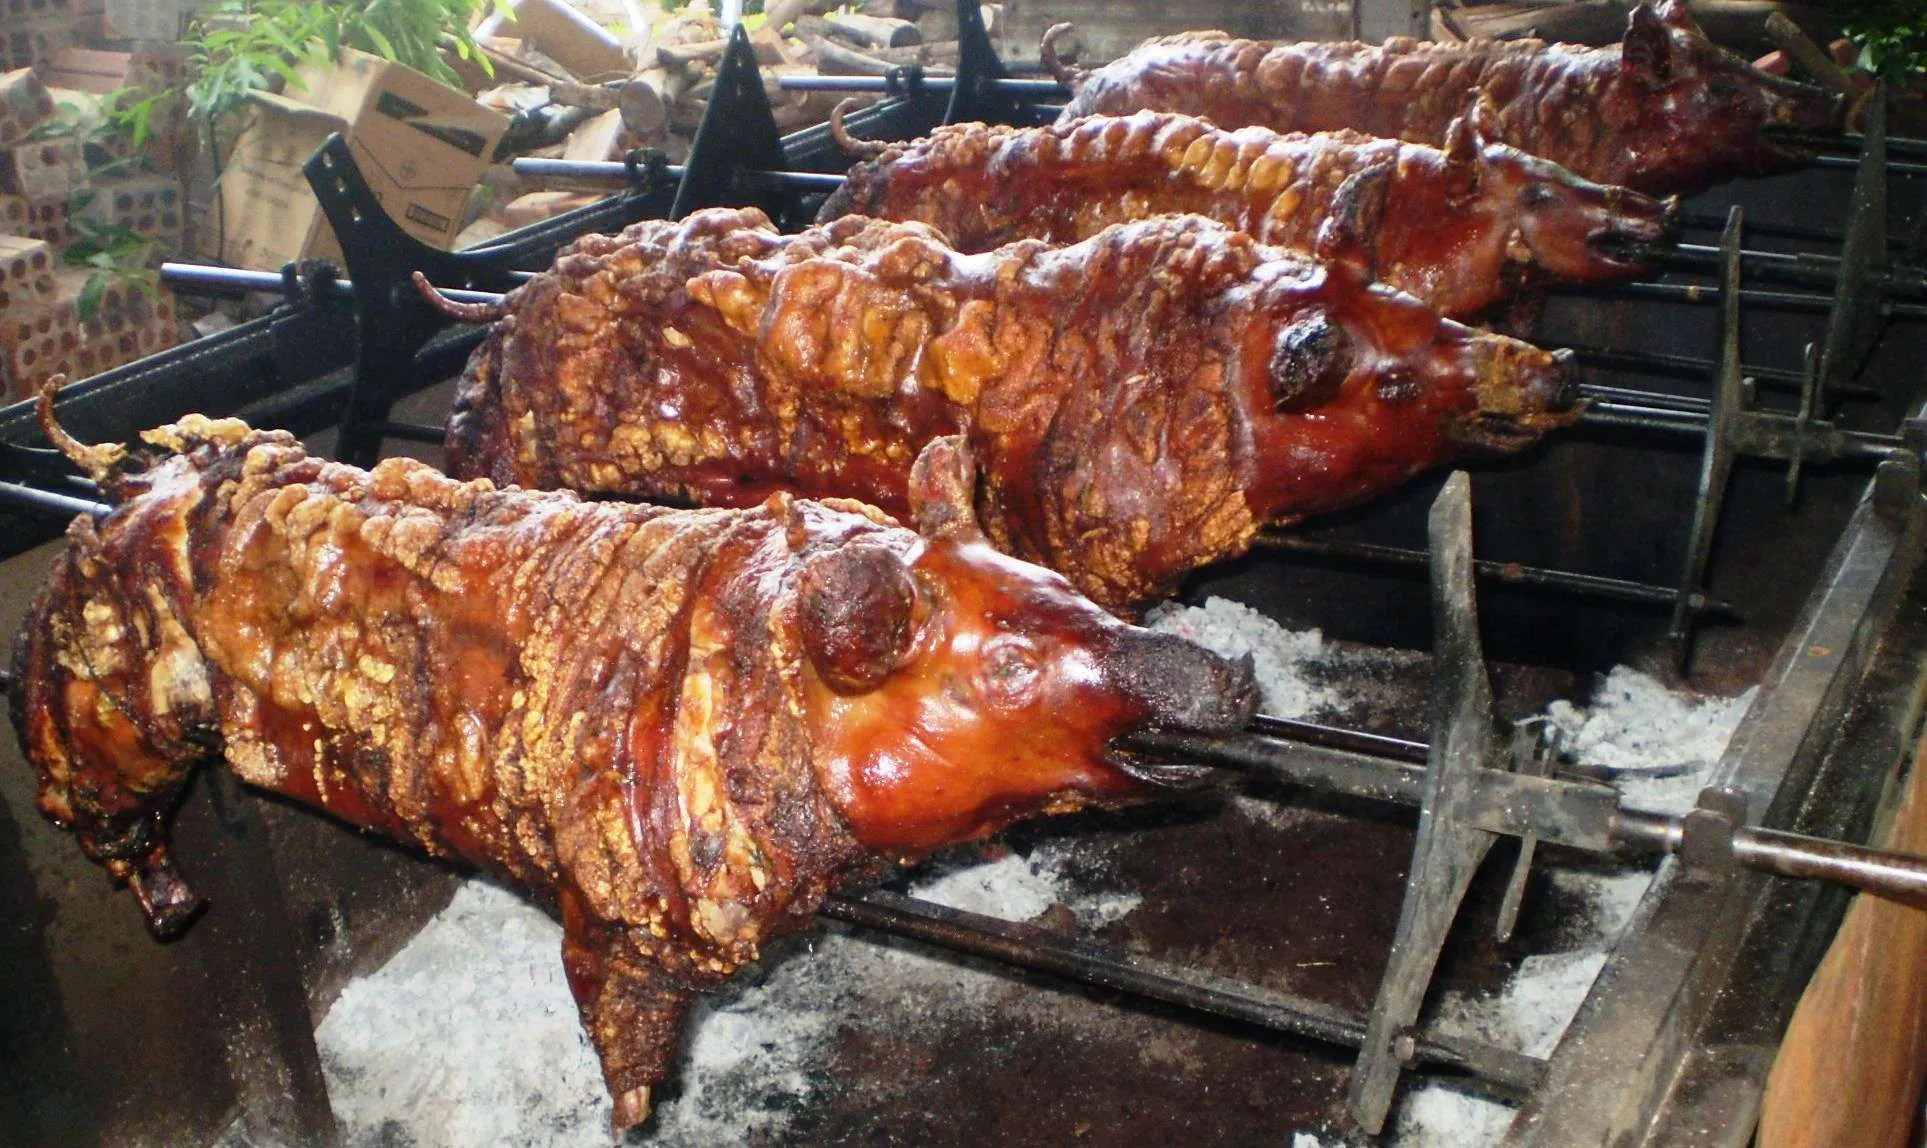 Na AABB, em Apucarana, acontece o 22º Porco no Rolete - Foto: Arquivo